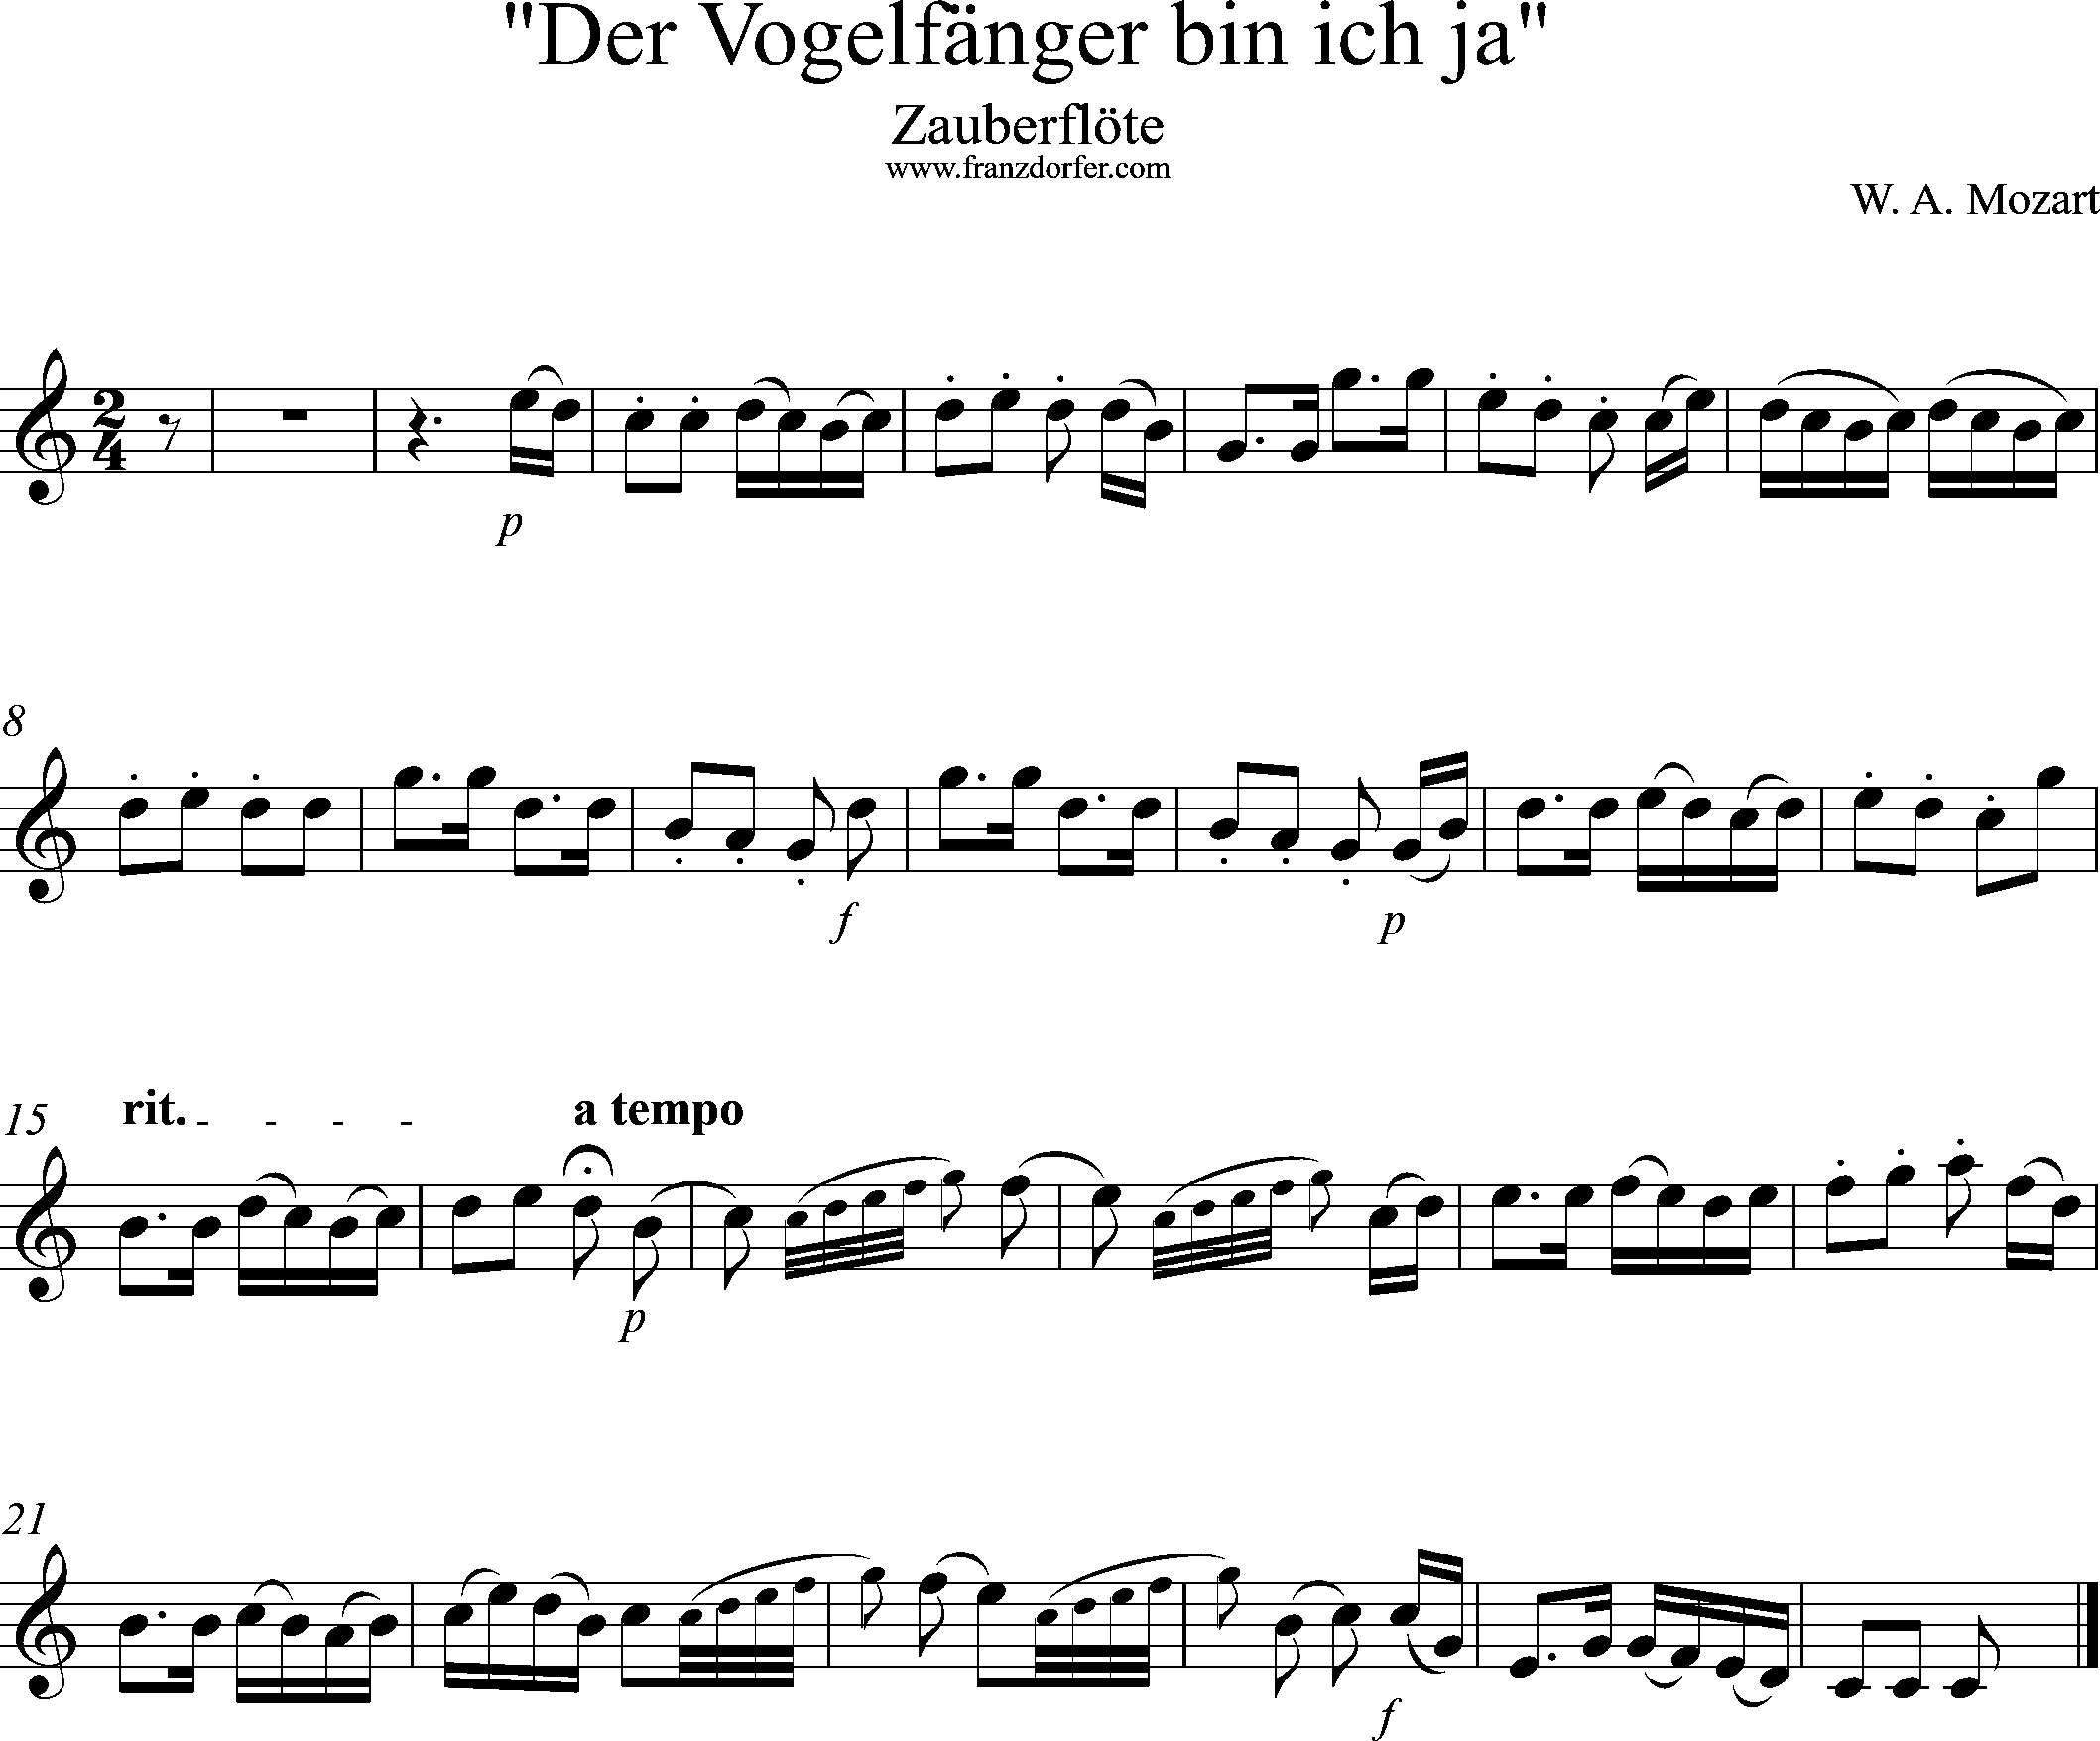 Uauberflöte, Vogelfängerlied, Solostimme, C-Dur